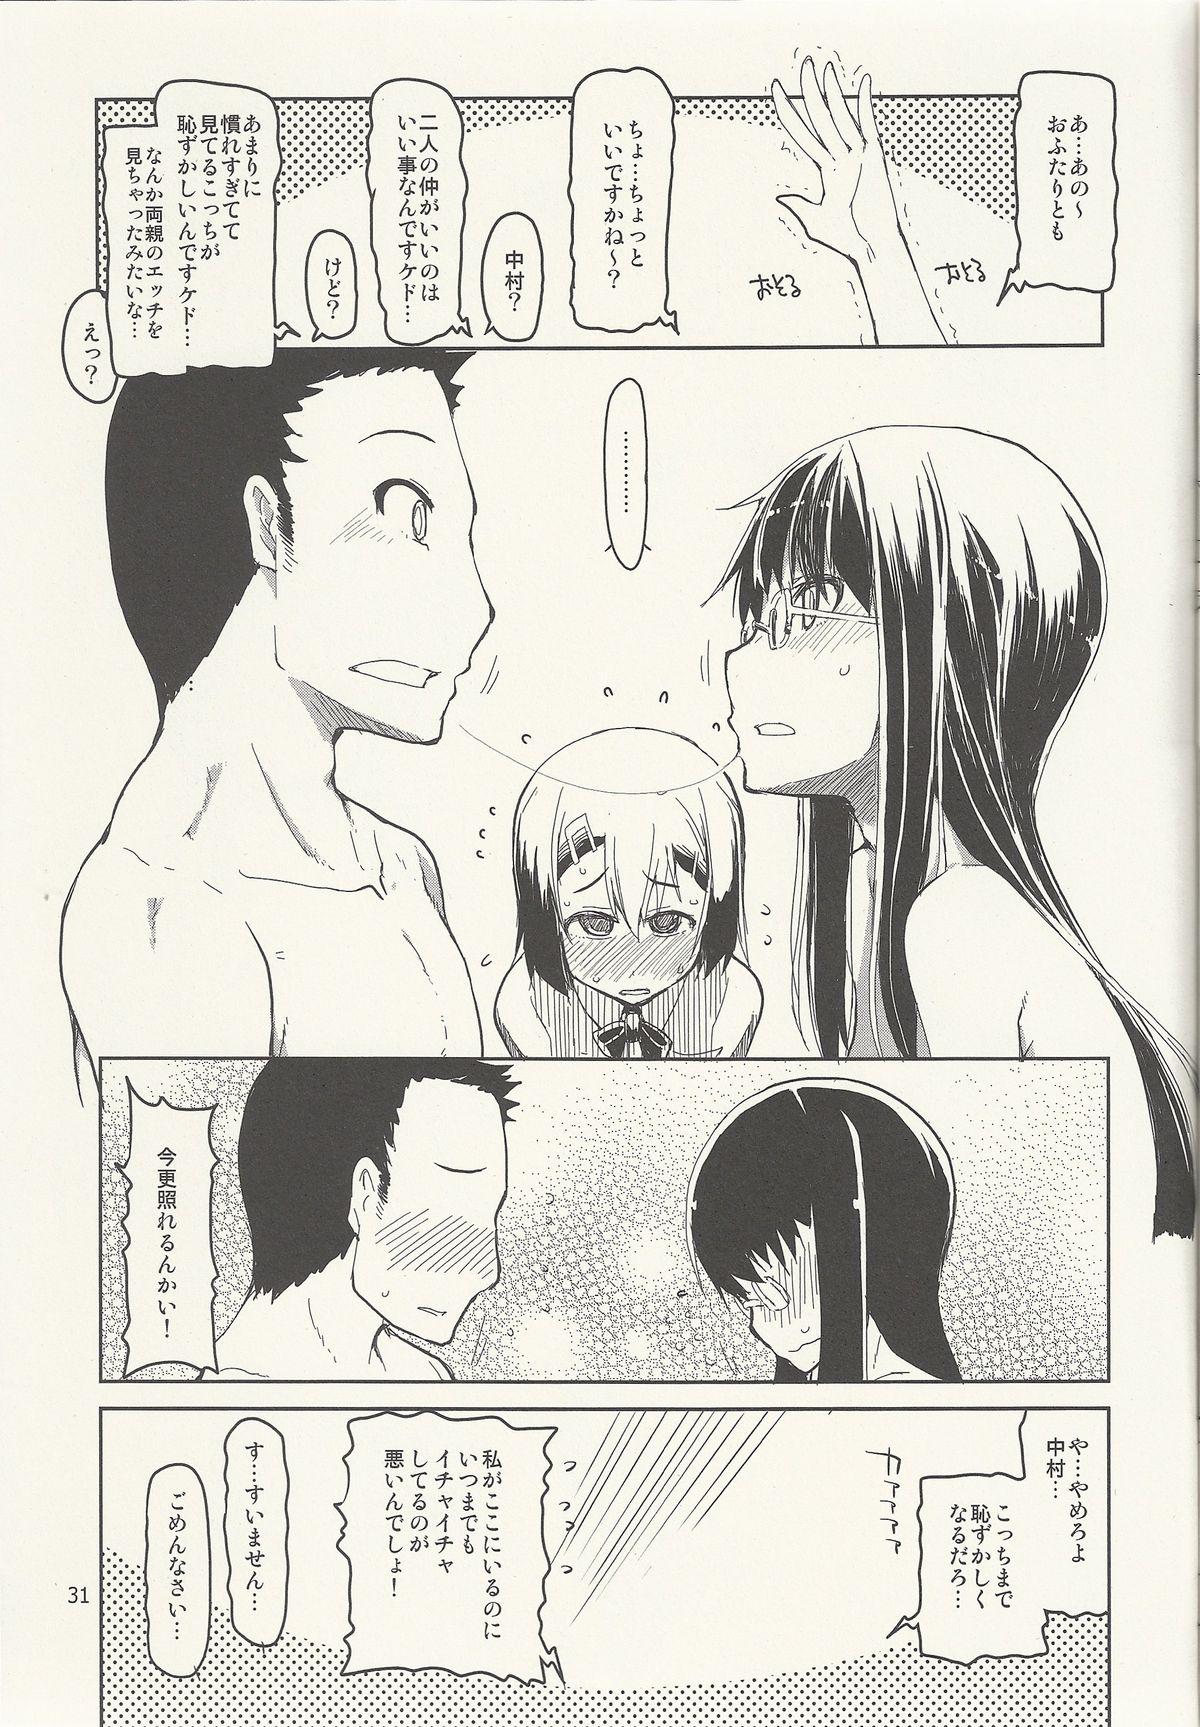 Natsuzuka-san no Himitsu. Vol. 6 Kanketsu Hen 32